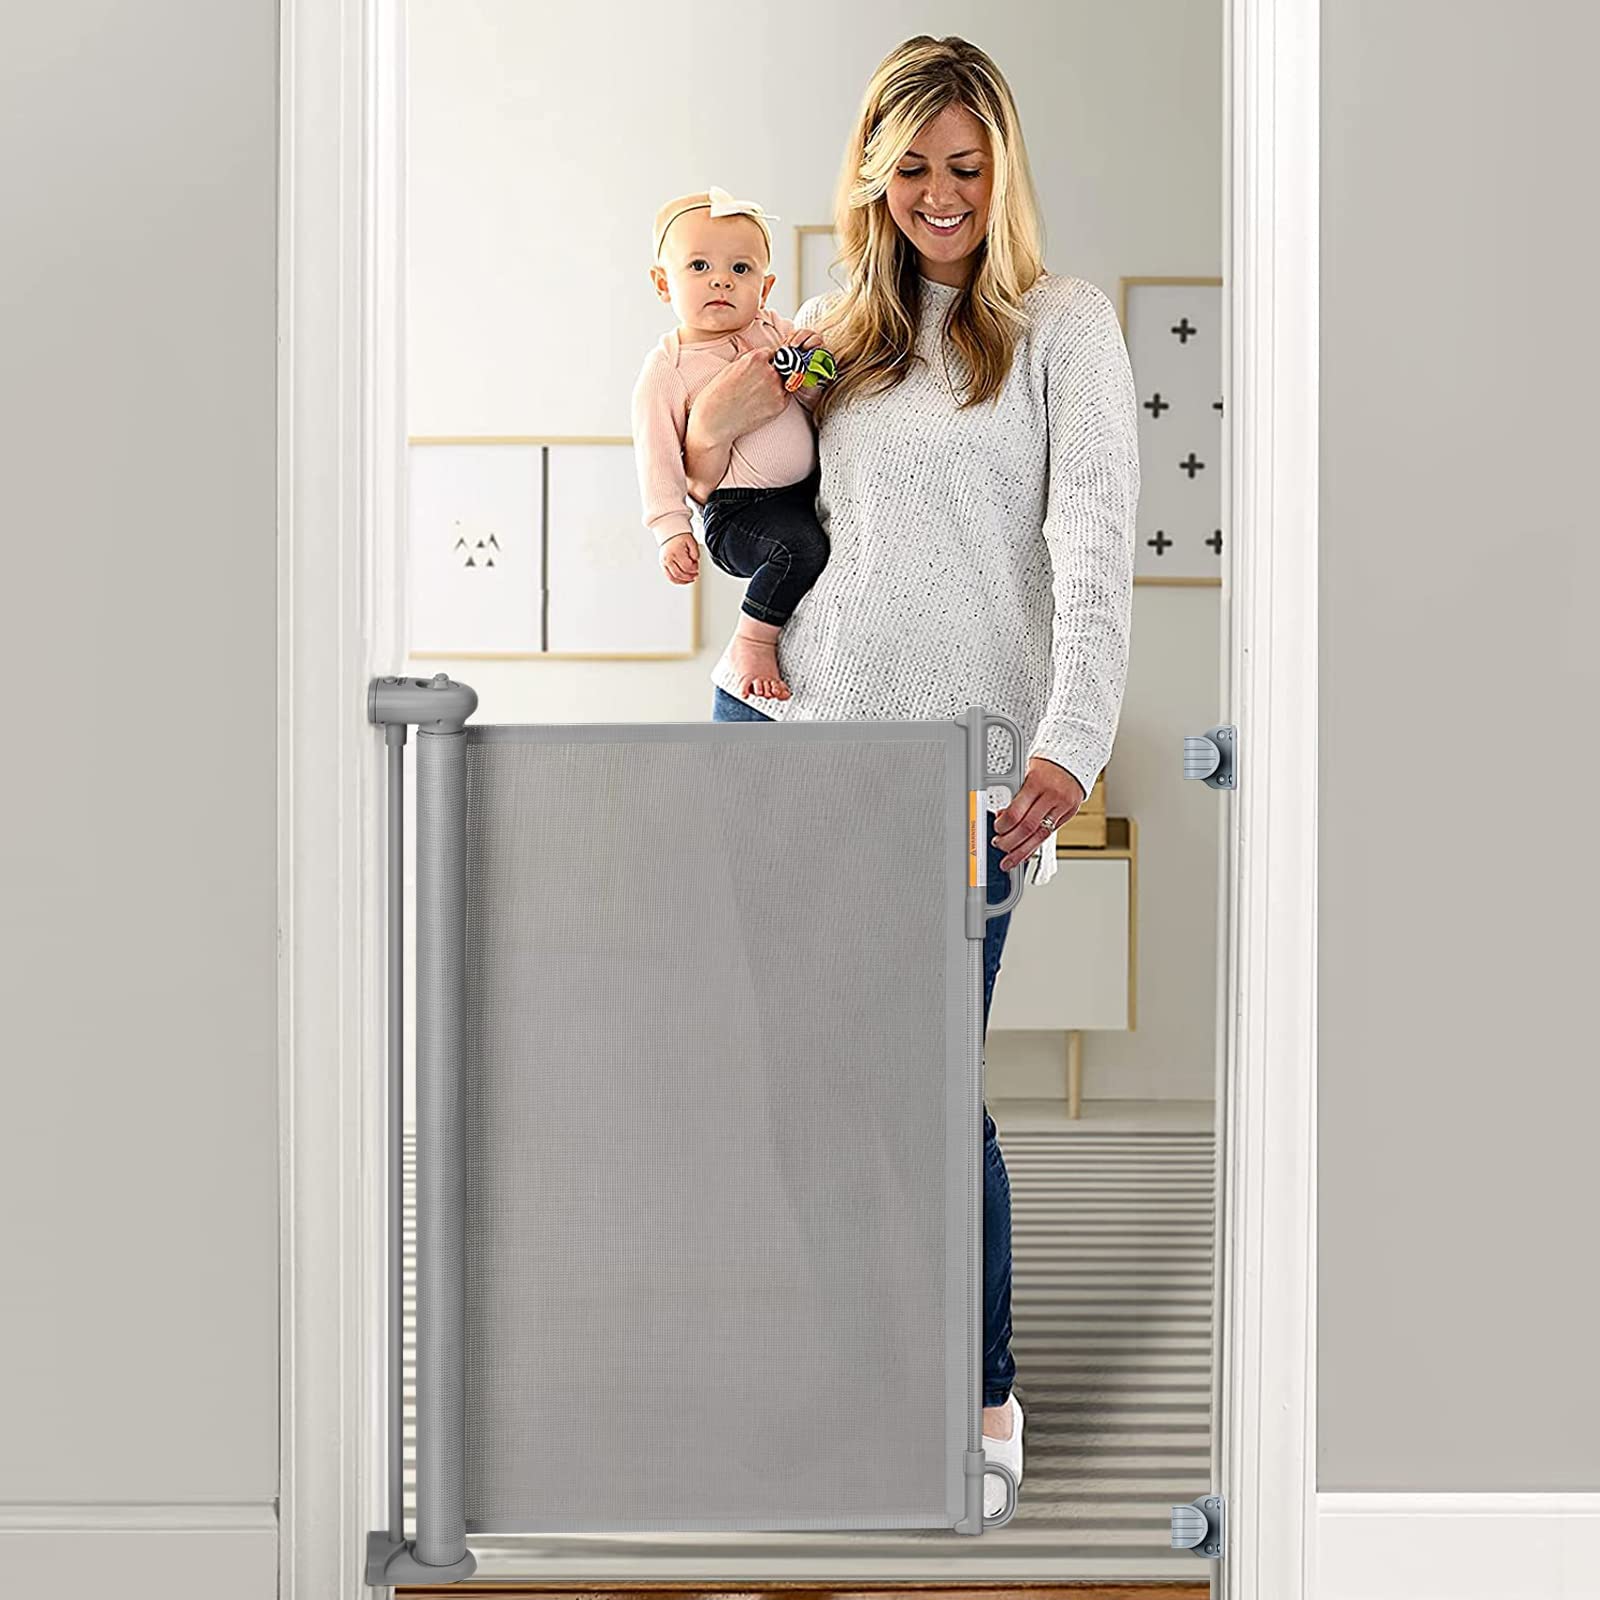 Momcozy - Puerta retráctil para seguridad de bebés y niños, altura de 33 pulgadas, se extiende hasta 55 pulgadas de ancho